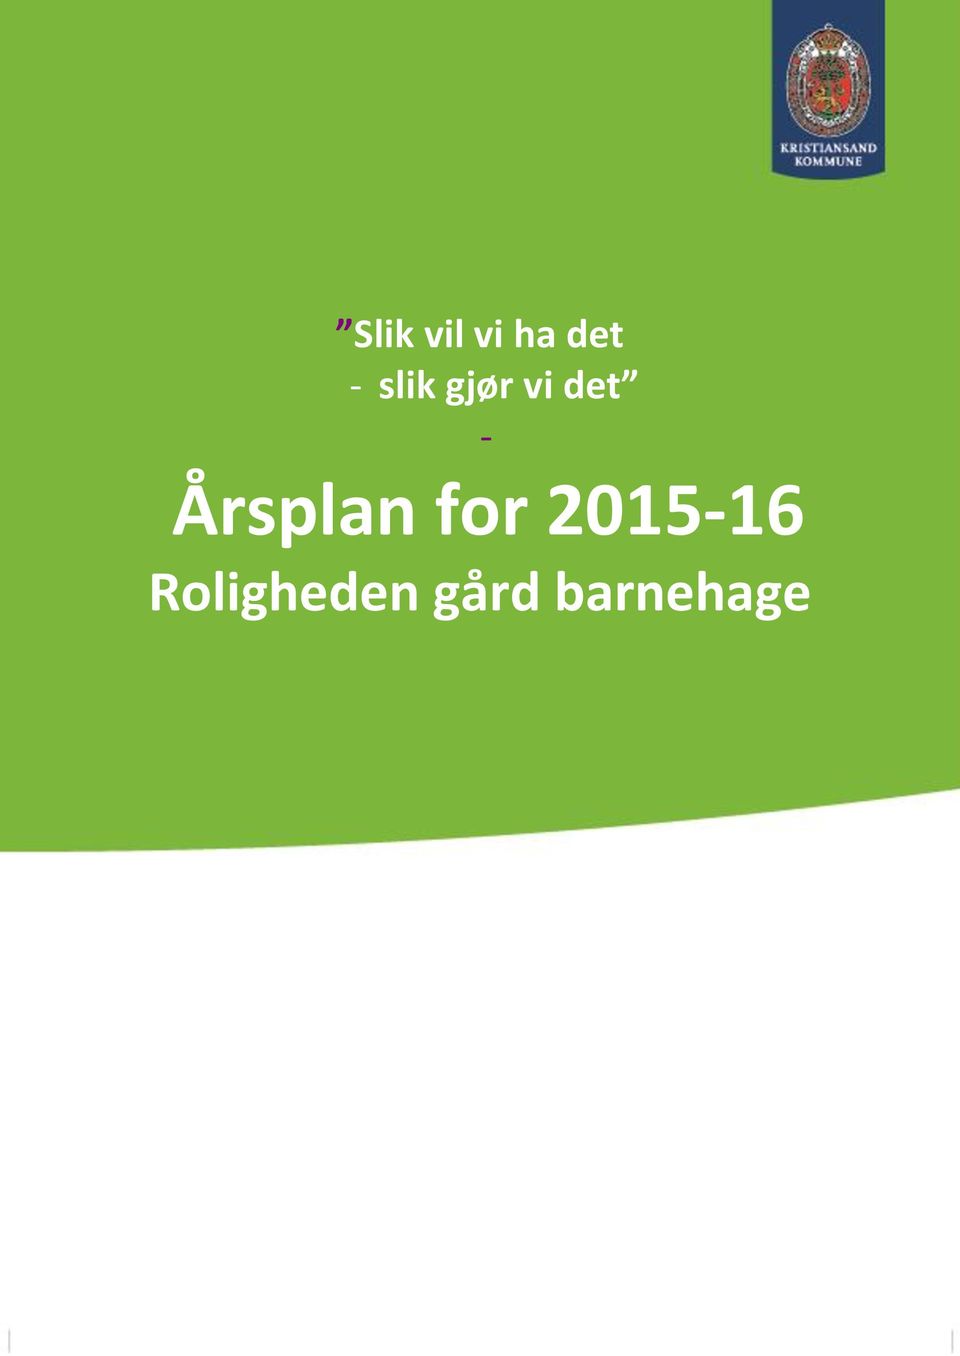 Årsplan for 2015-16